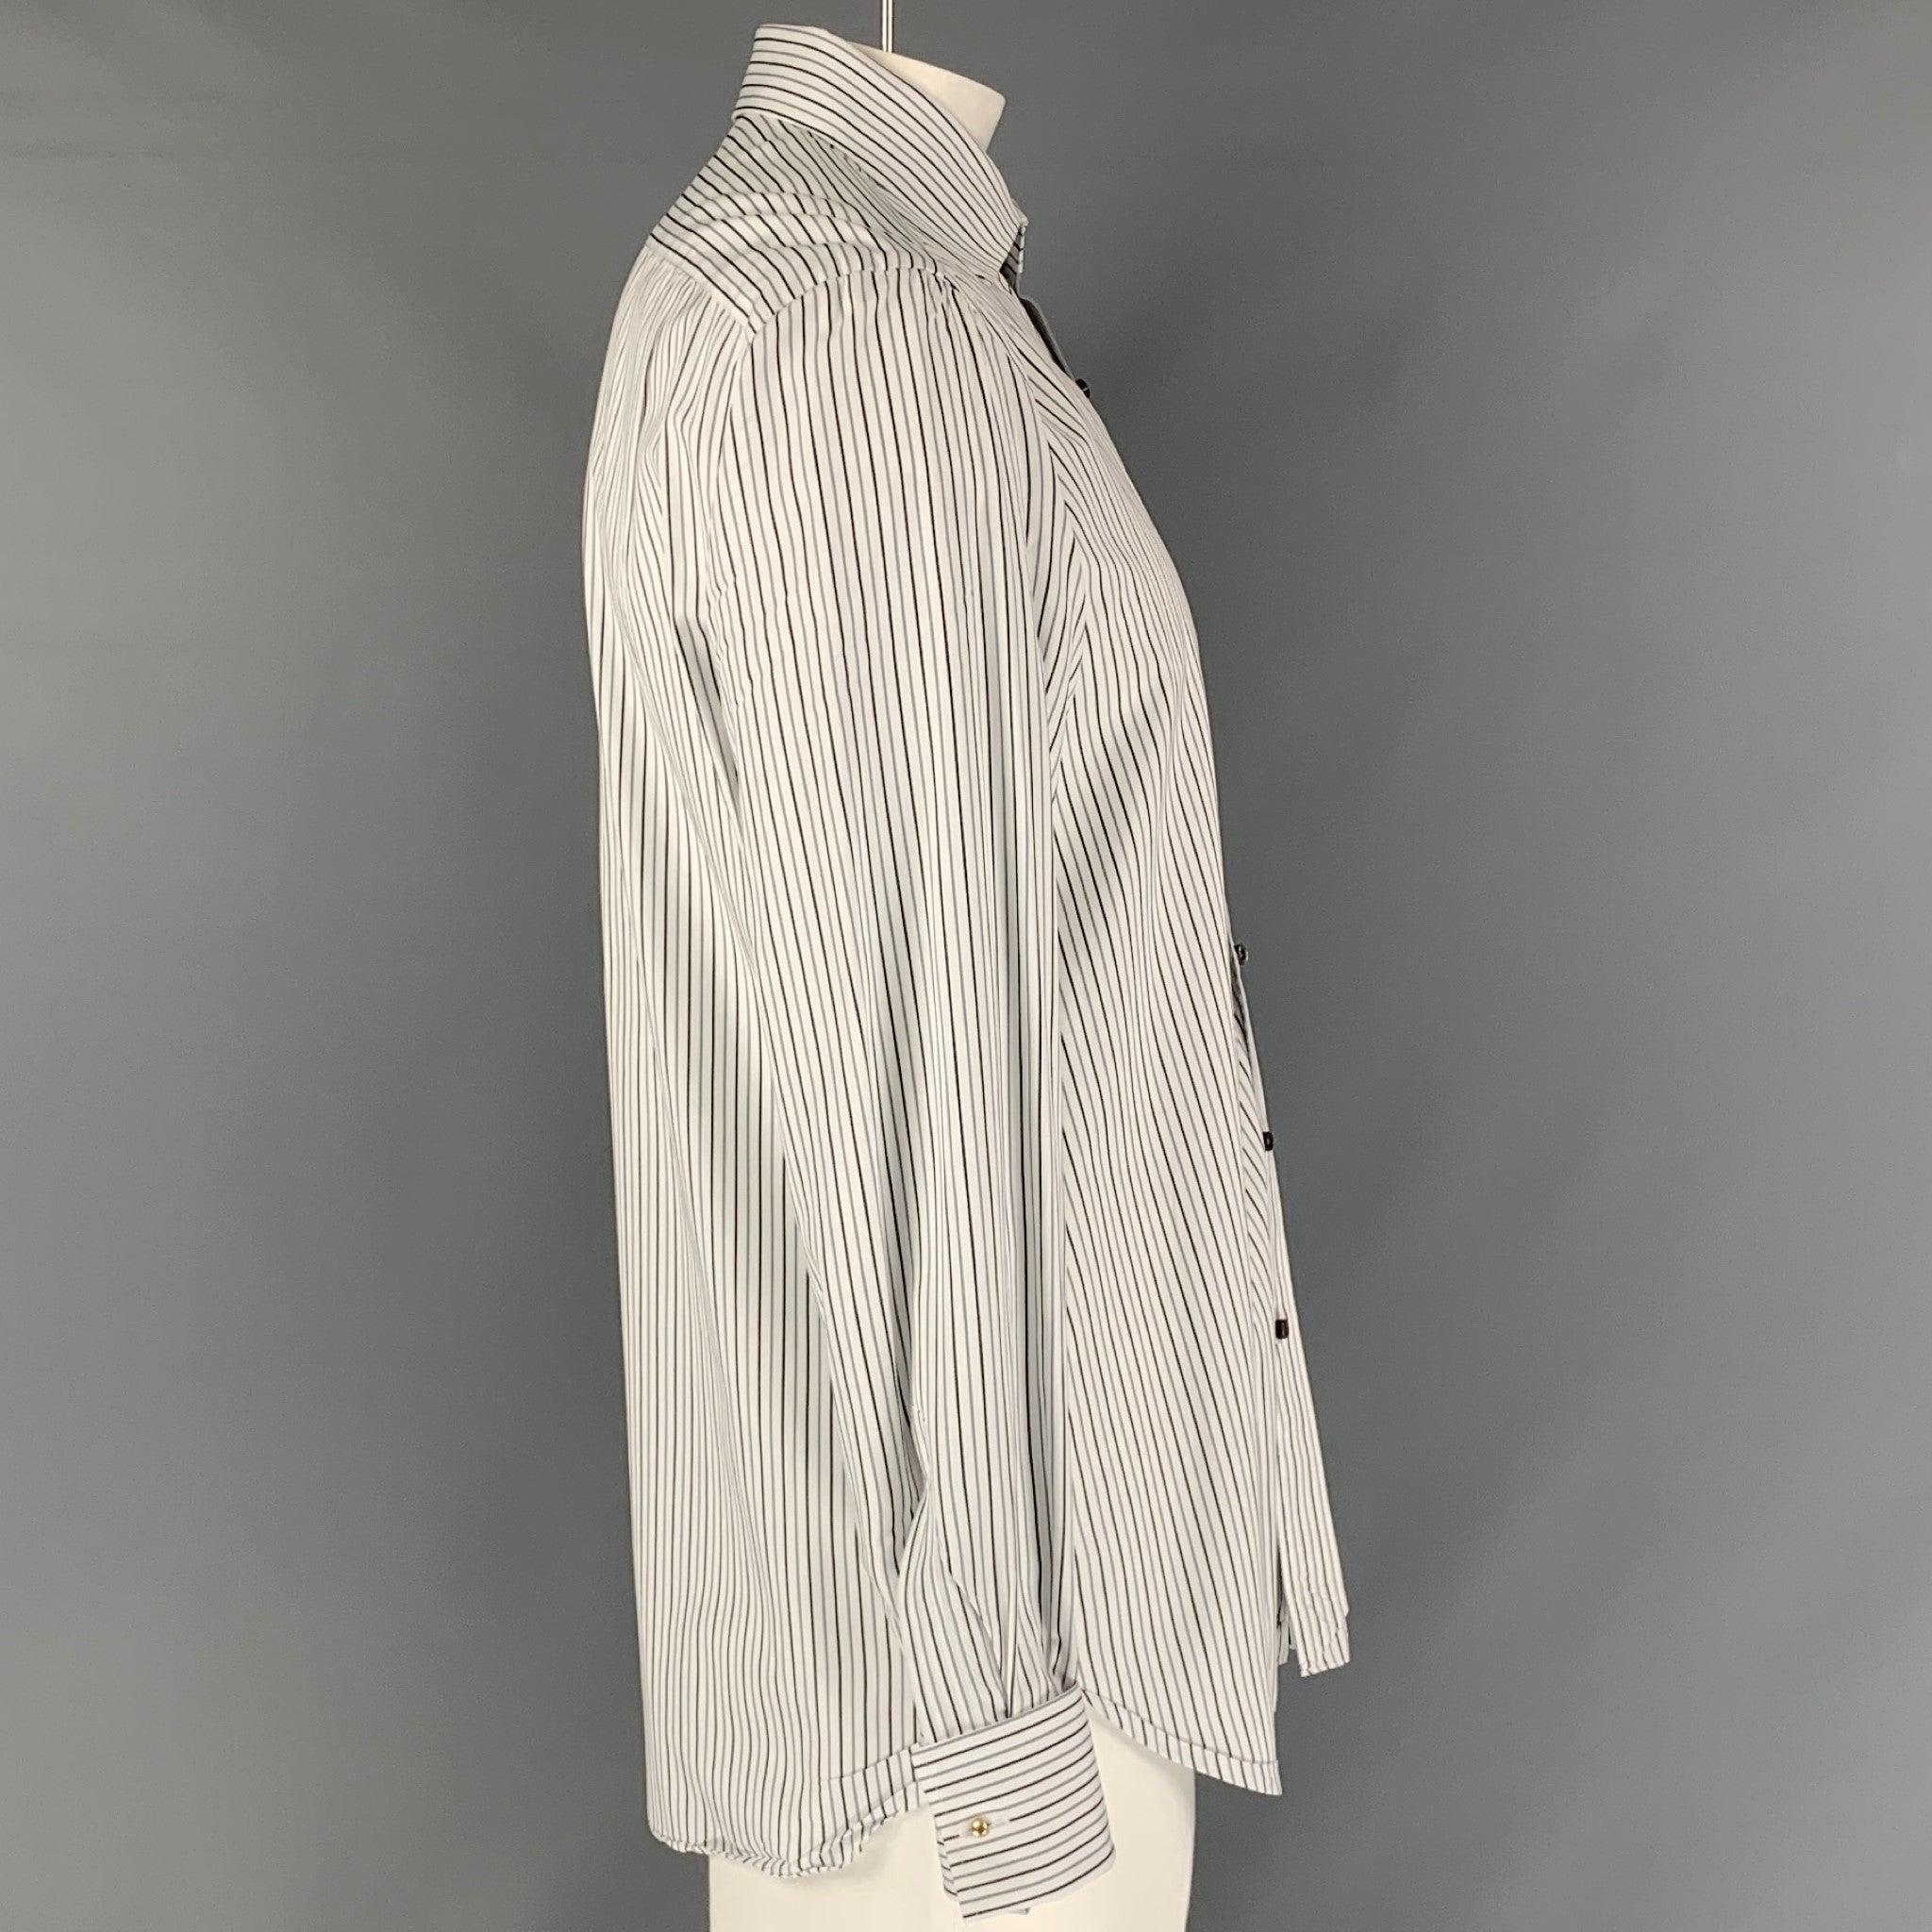 La chemise à manches longues Isaia est en coton rayé blanc et noir. Elle présente un col rond, des poignets français et se ferme par un bouton. Fabriqué en Italie. Excellent état. 

Marqué :   42 -16 1/2 

Mesures : 
 
Épaule : 19.5 pouces Poitrine